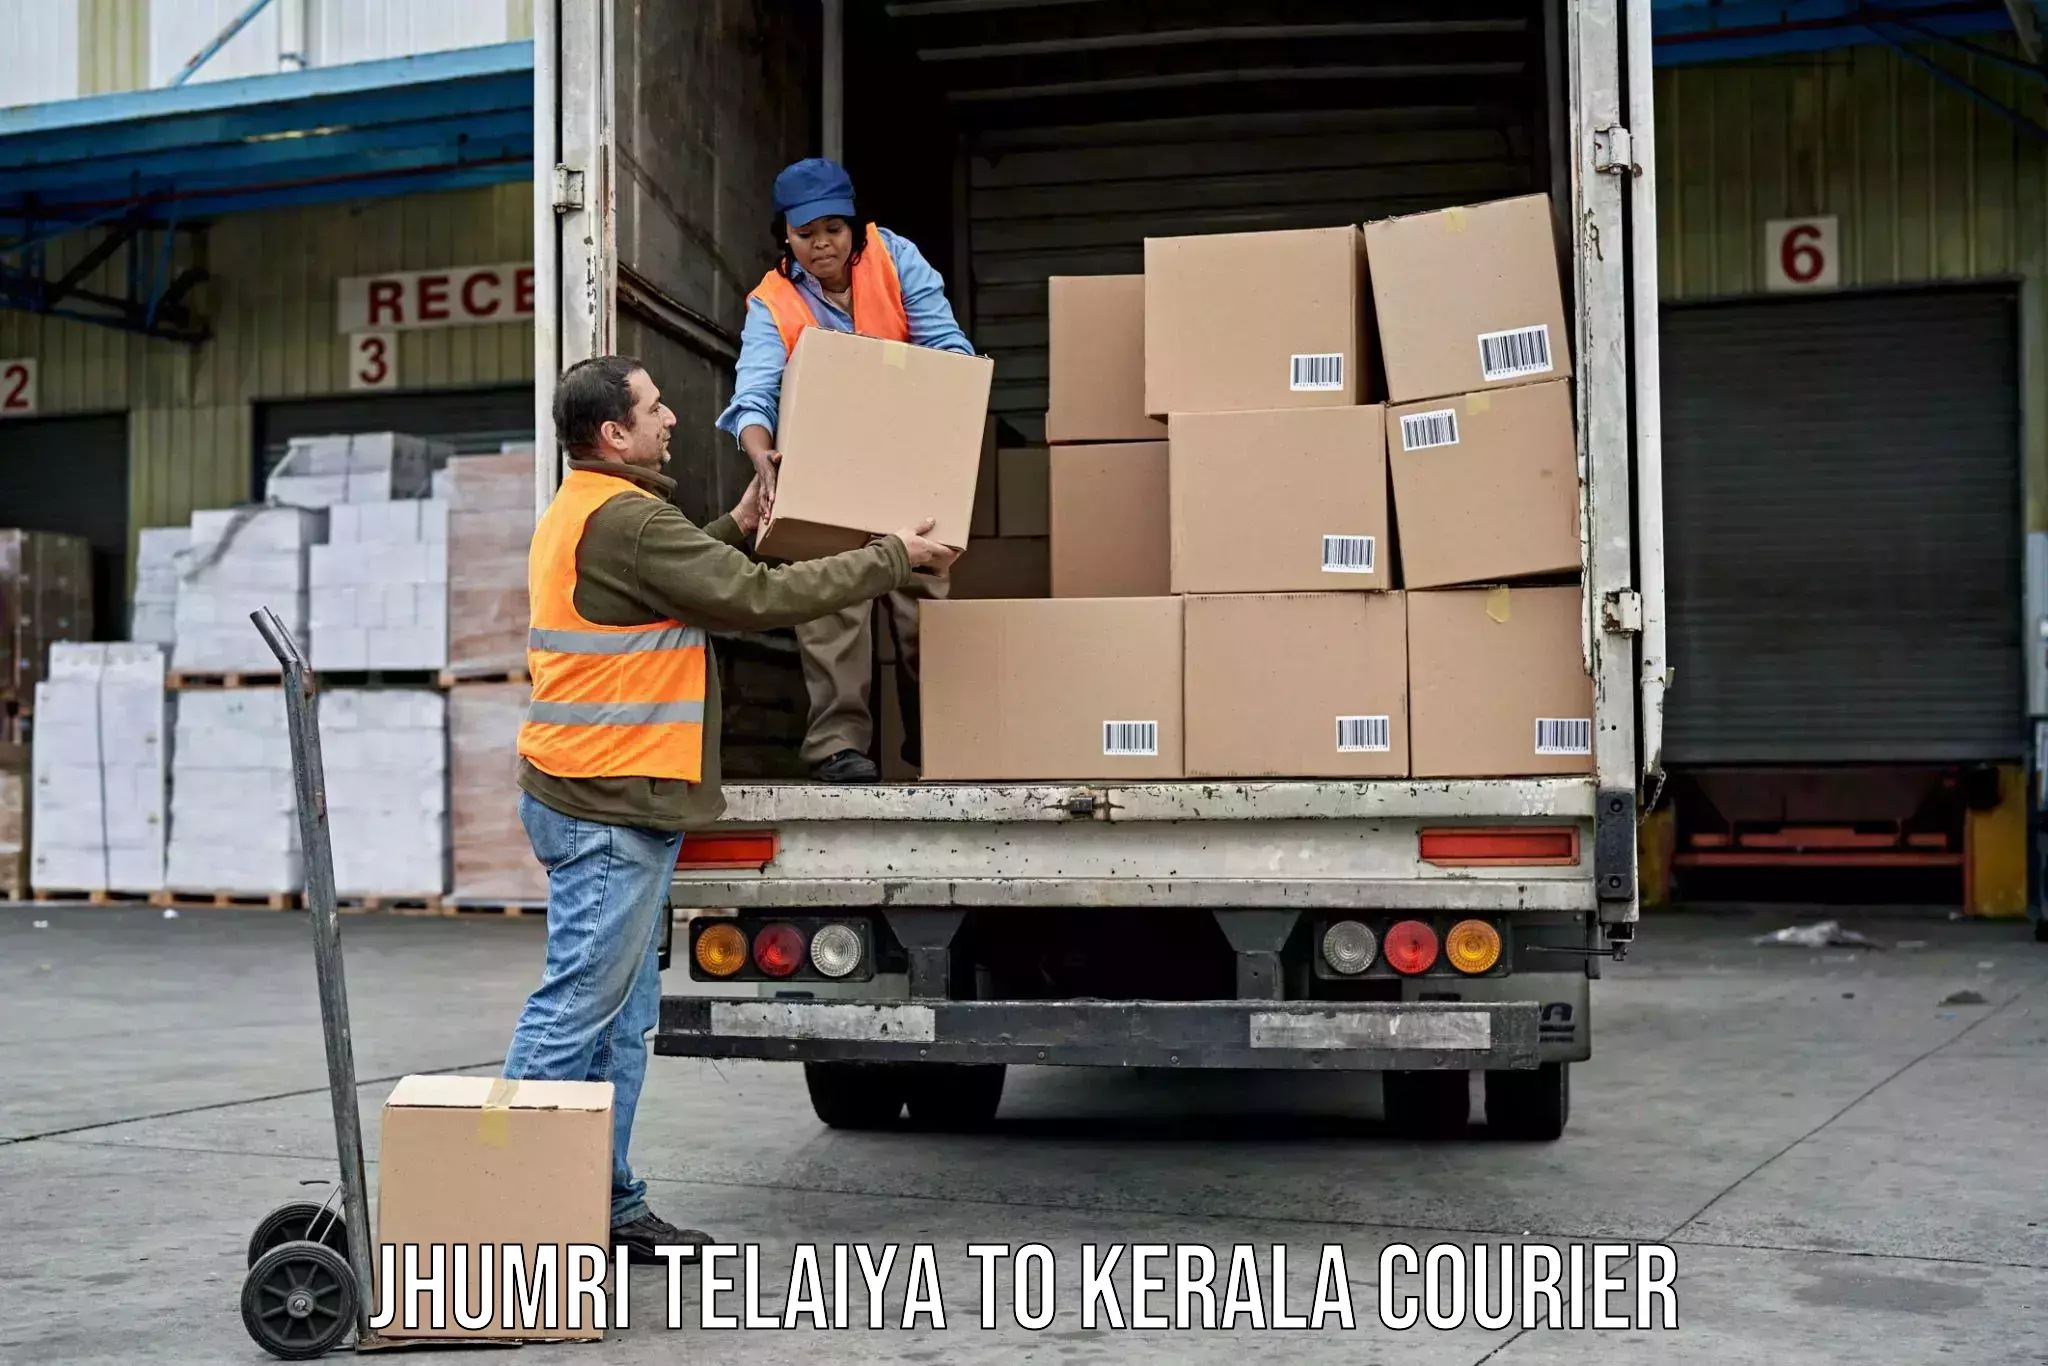 Luggage delivery operations Jhumri Telaiya to Kerala